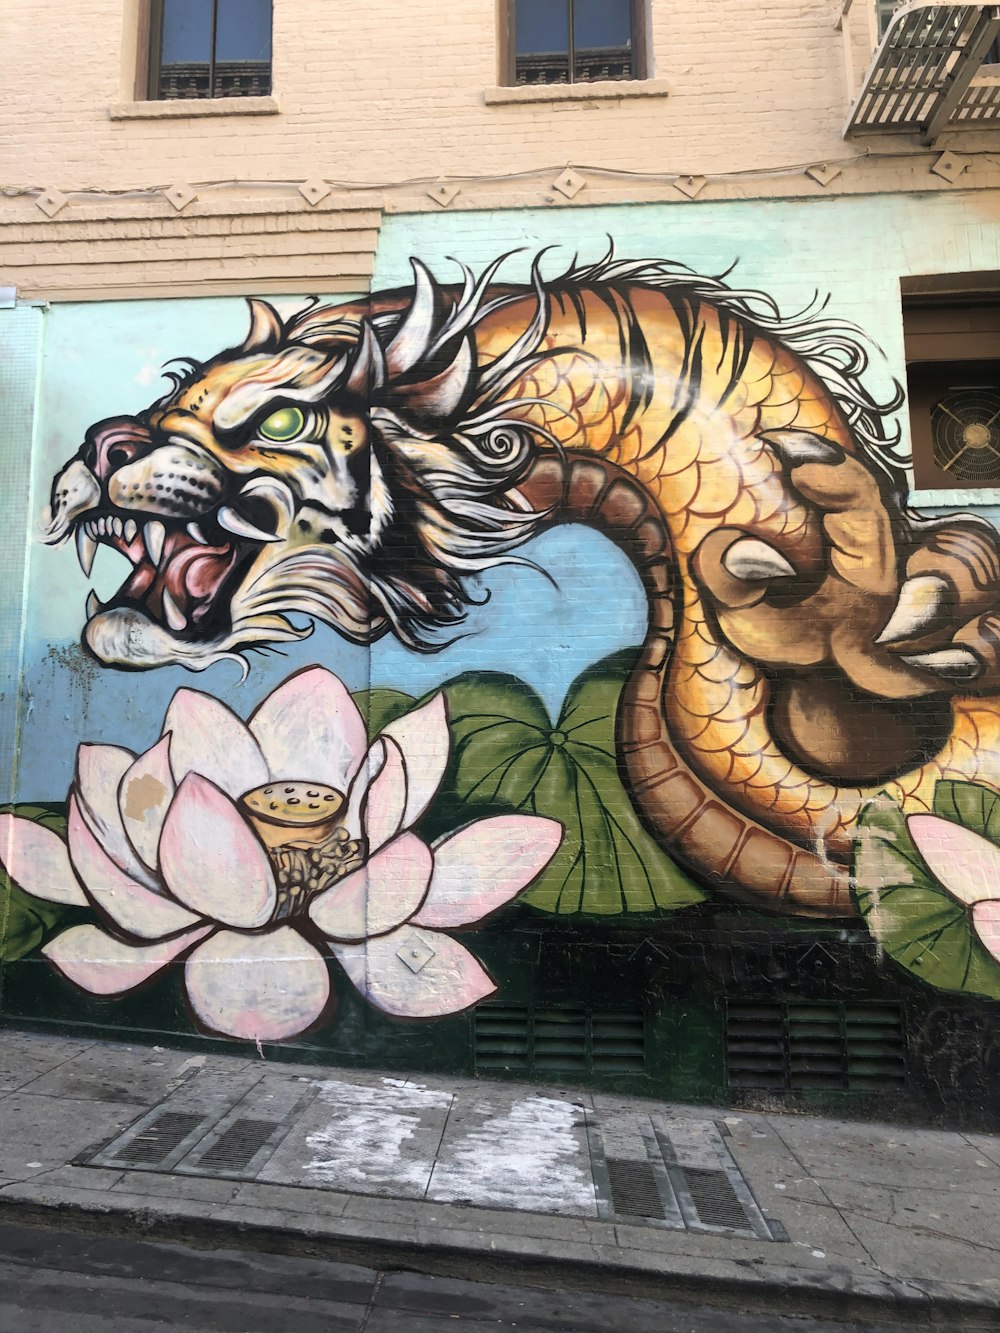 multicolored dragon graffiti art on concrete wall